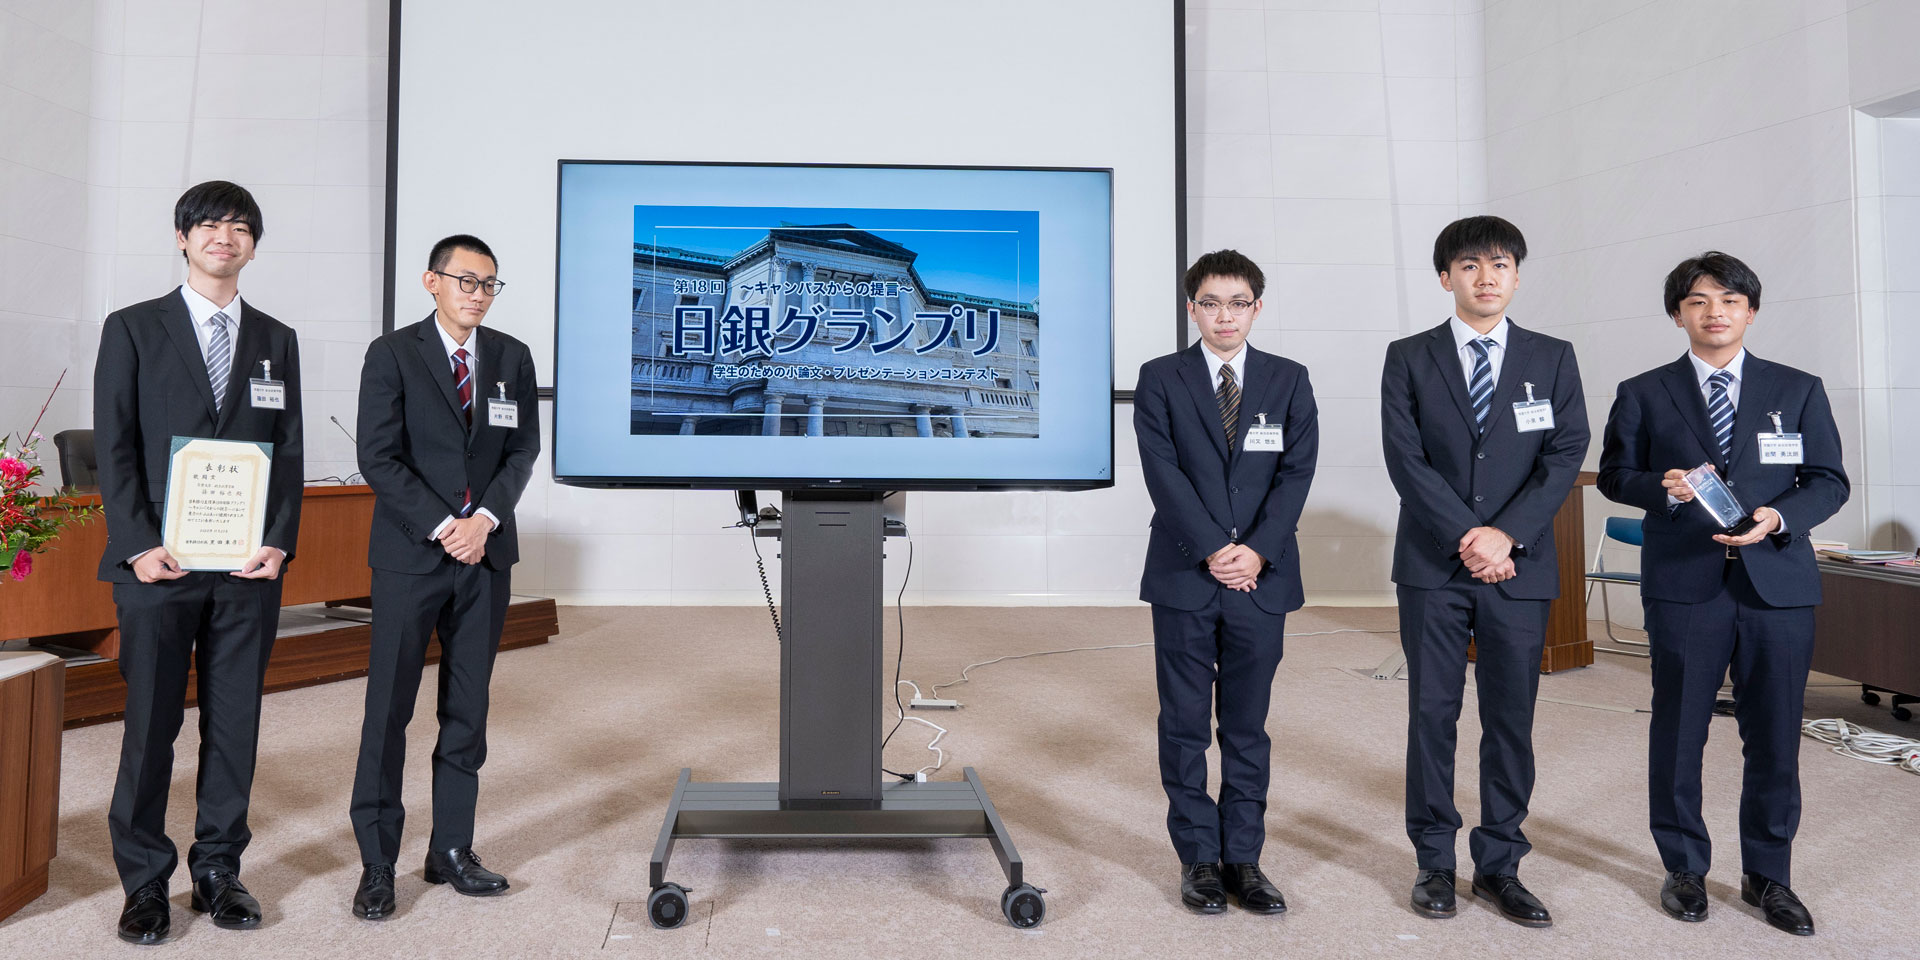 常磐大学チームの学生5人が、横一列に起立して記念撮影している様子